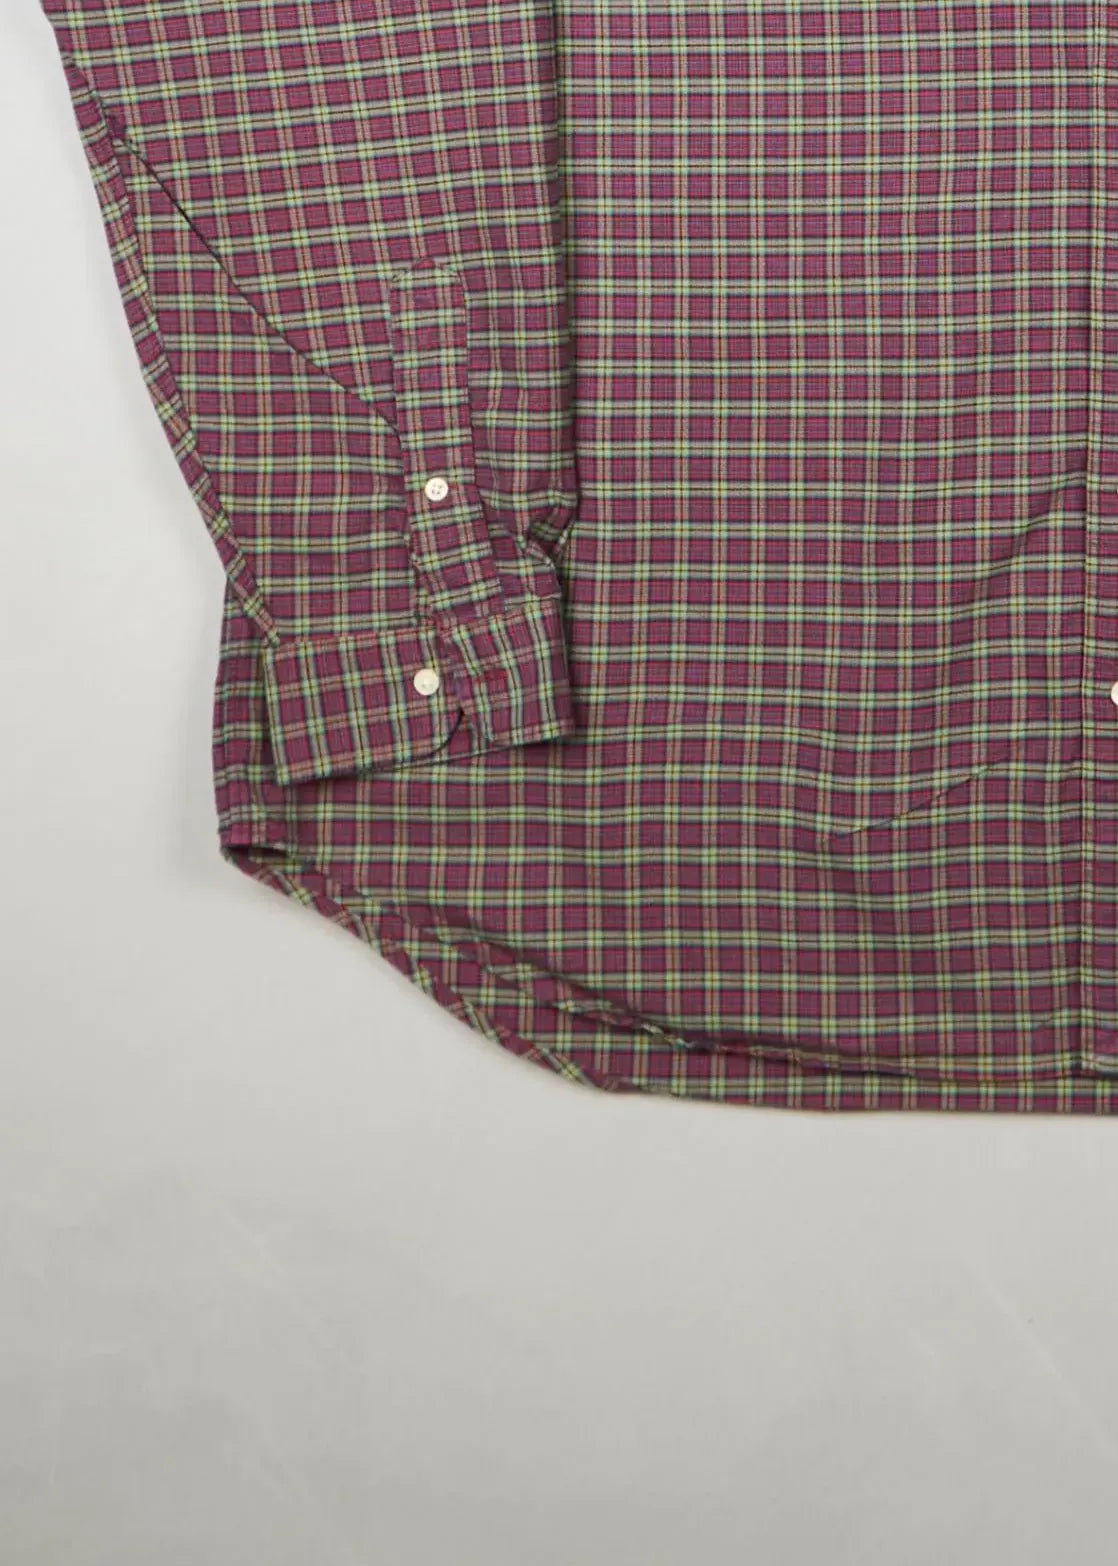 Ralph Lauren - Shirt () Bottom Left